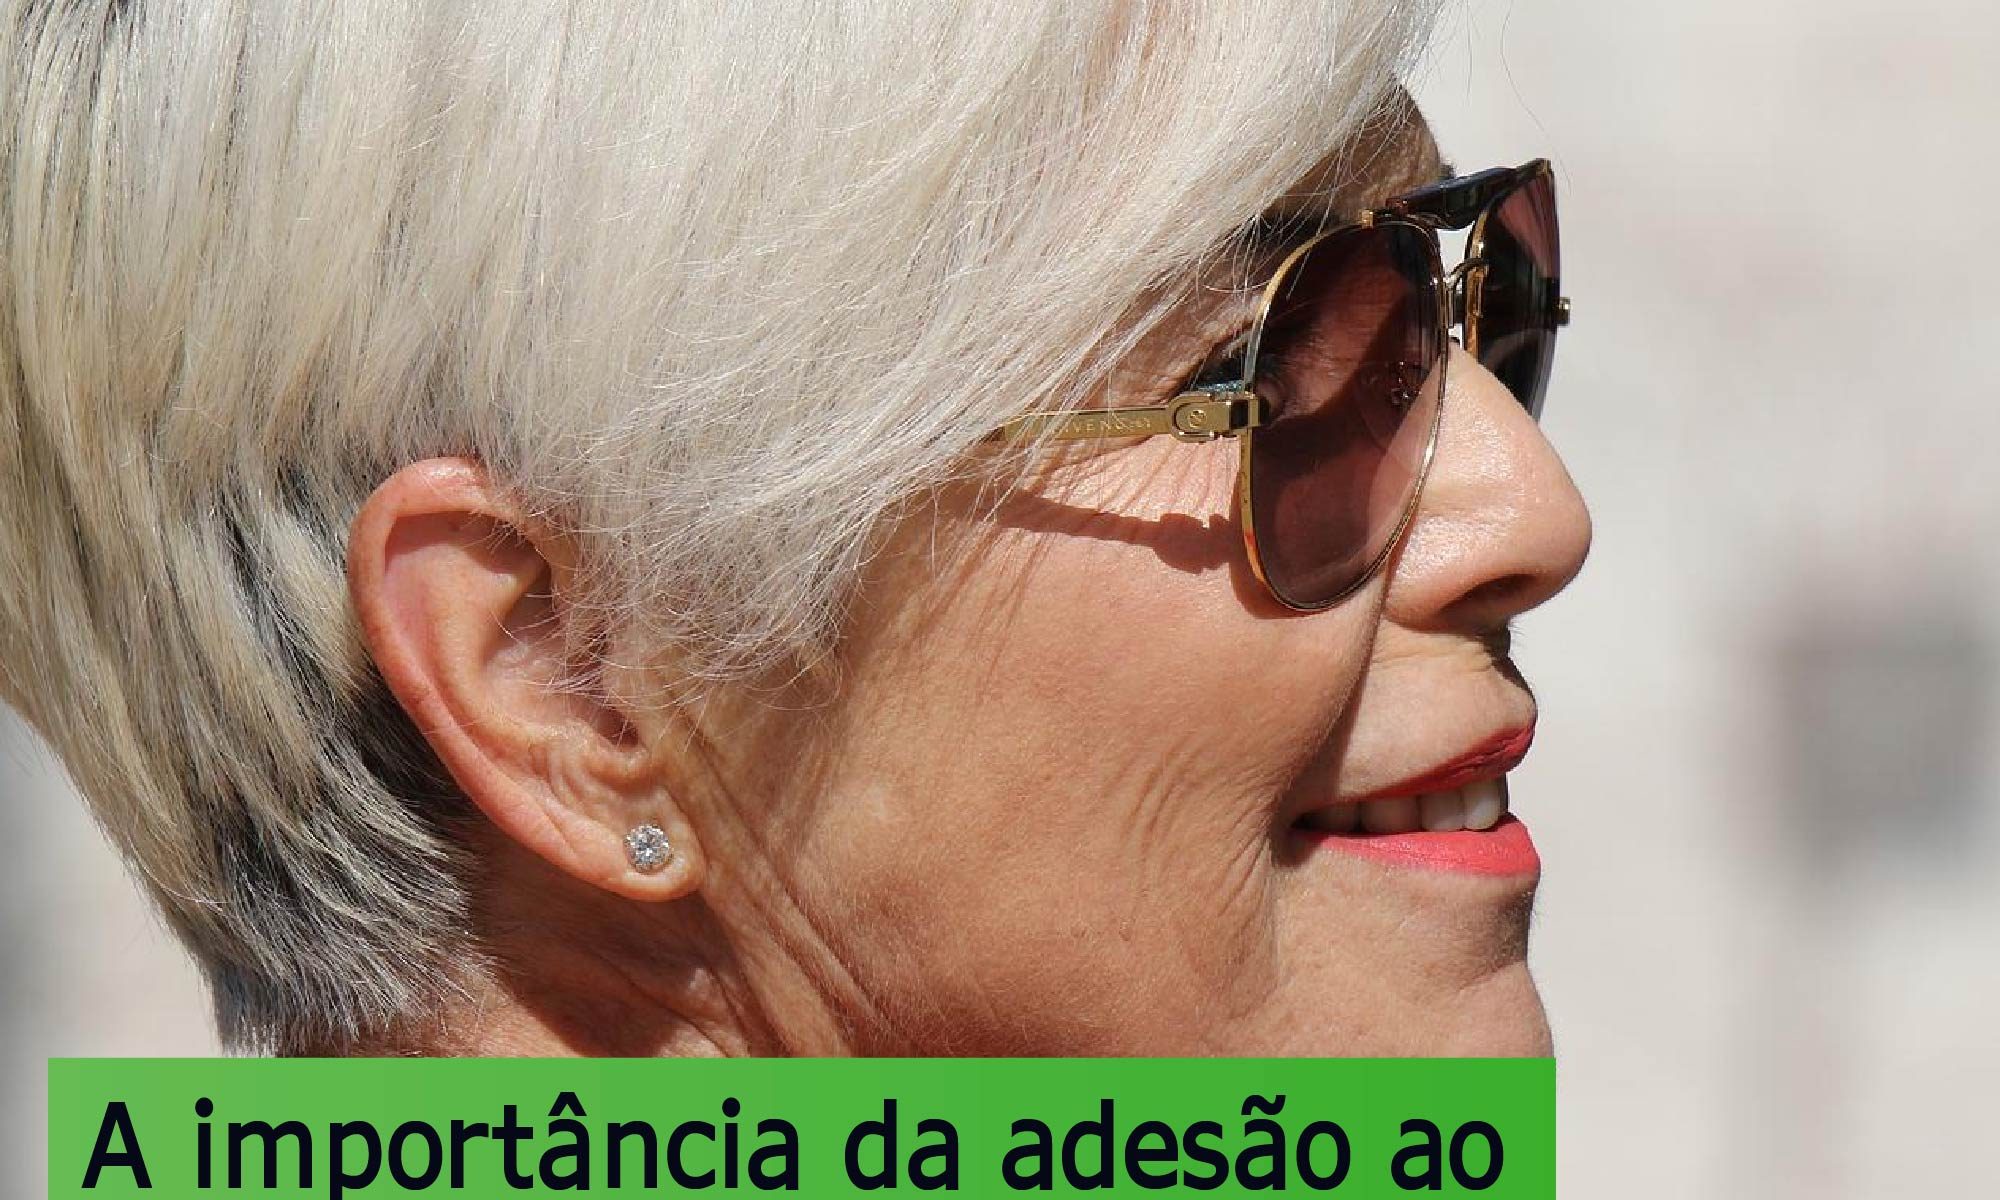 foto de perfil de uma senhora sorrindo e de óculos escuros. Está escrito: "A importância da adesão ao tratamento para o controle da progressão da DMRI úmida" e há a logo da Retina Brasil